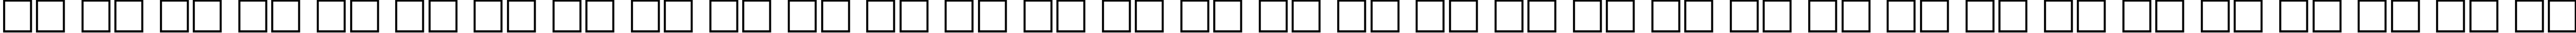 Пример написания русского алфавита шрифтом AstronCTT